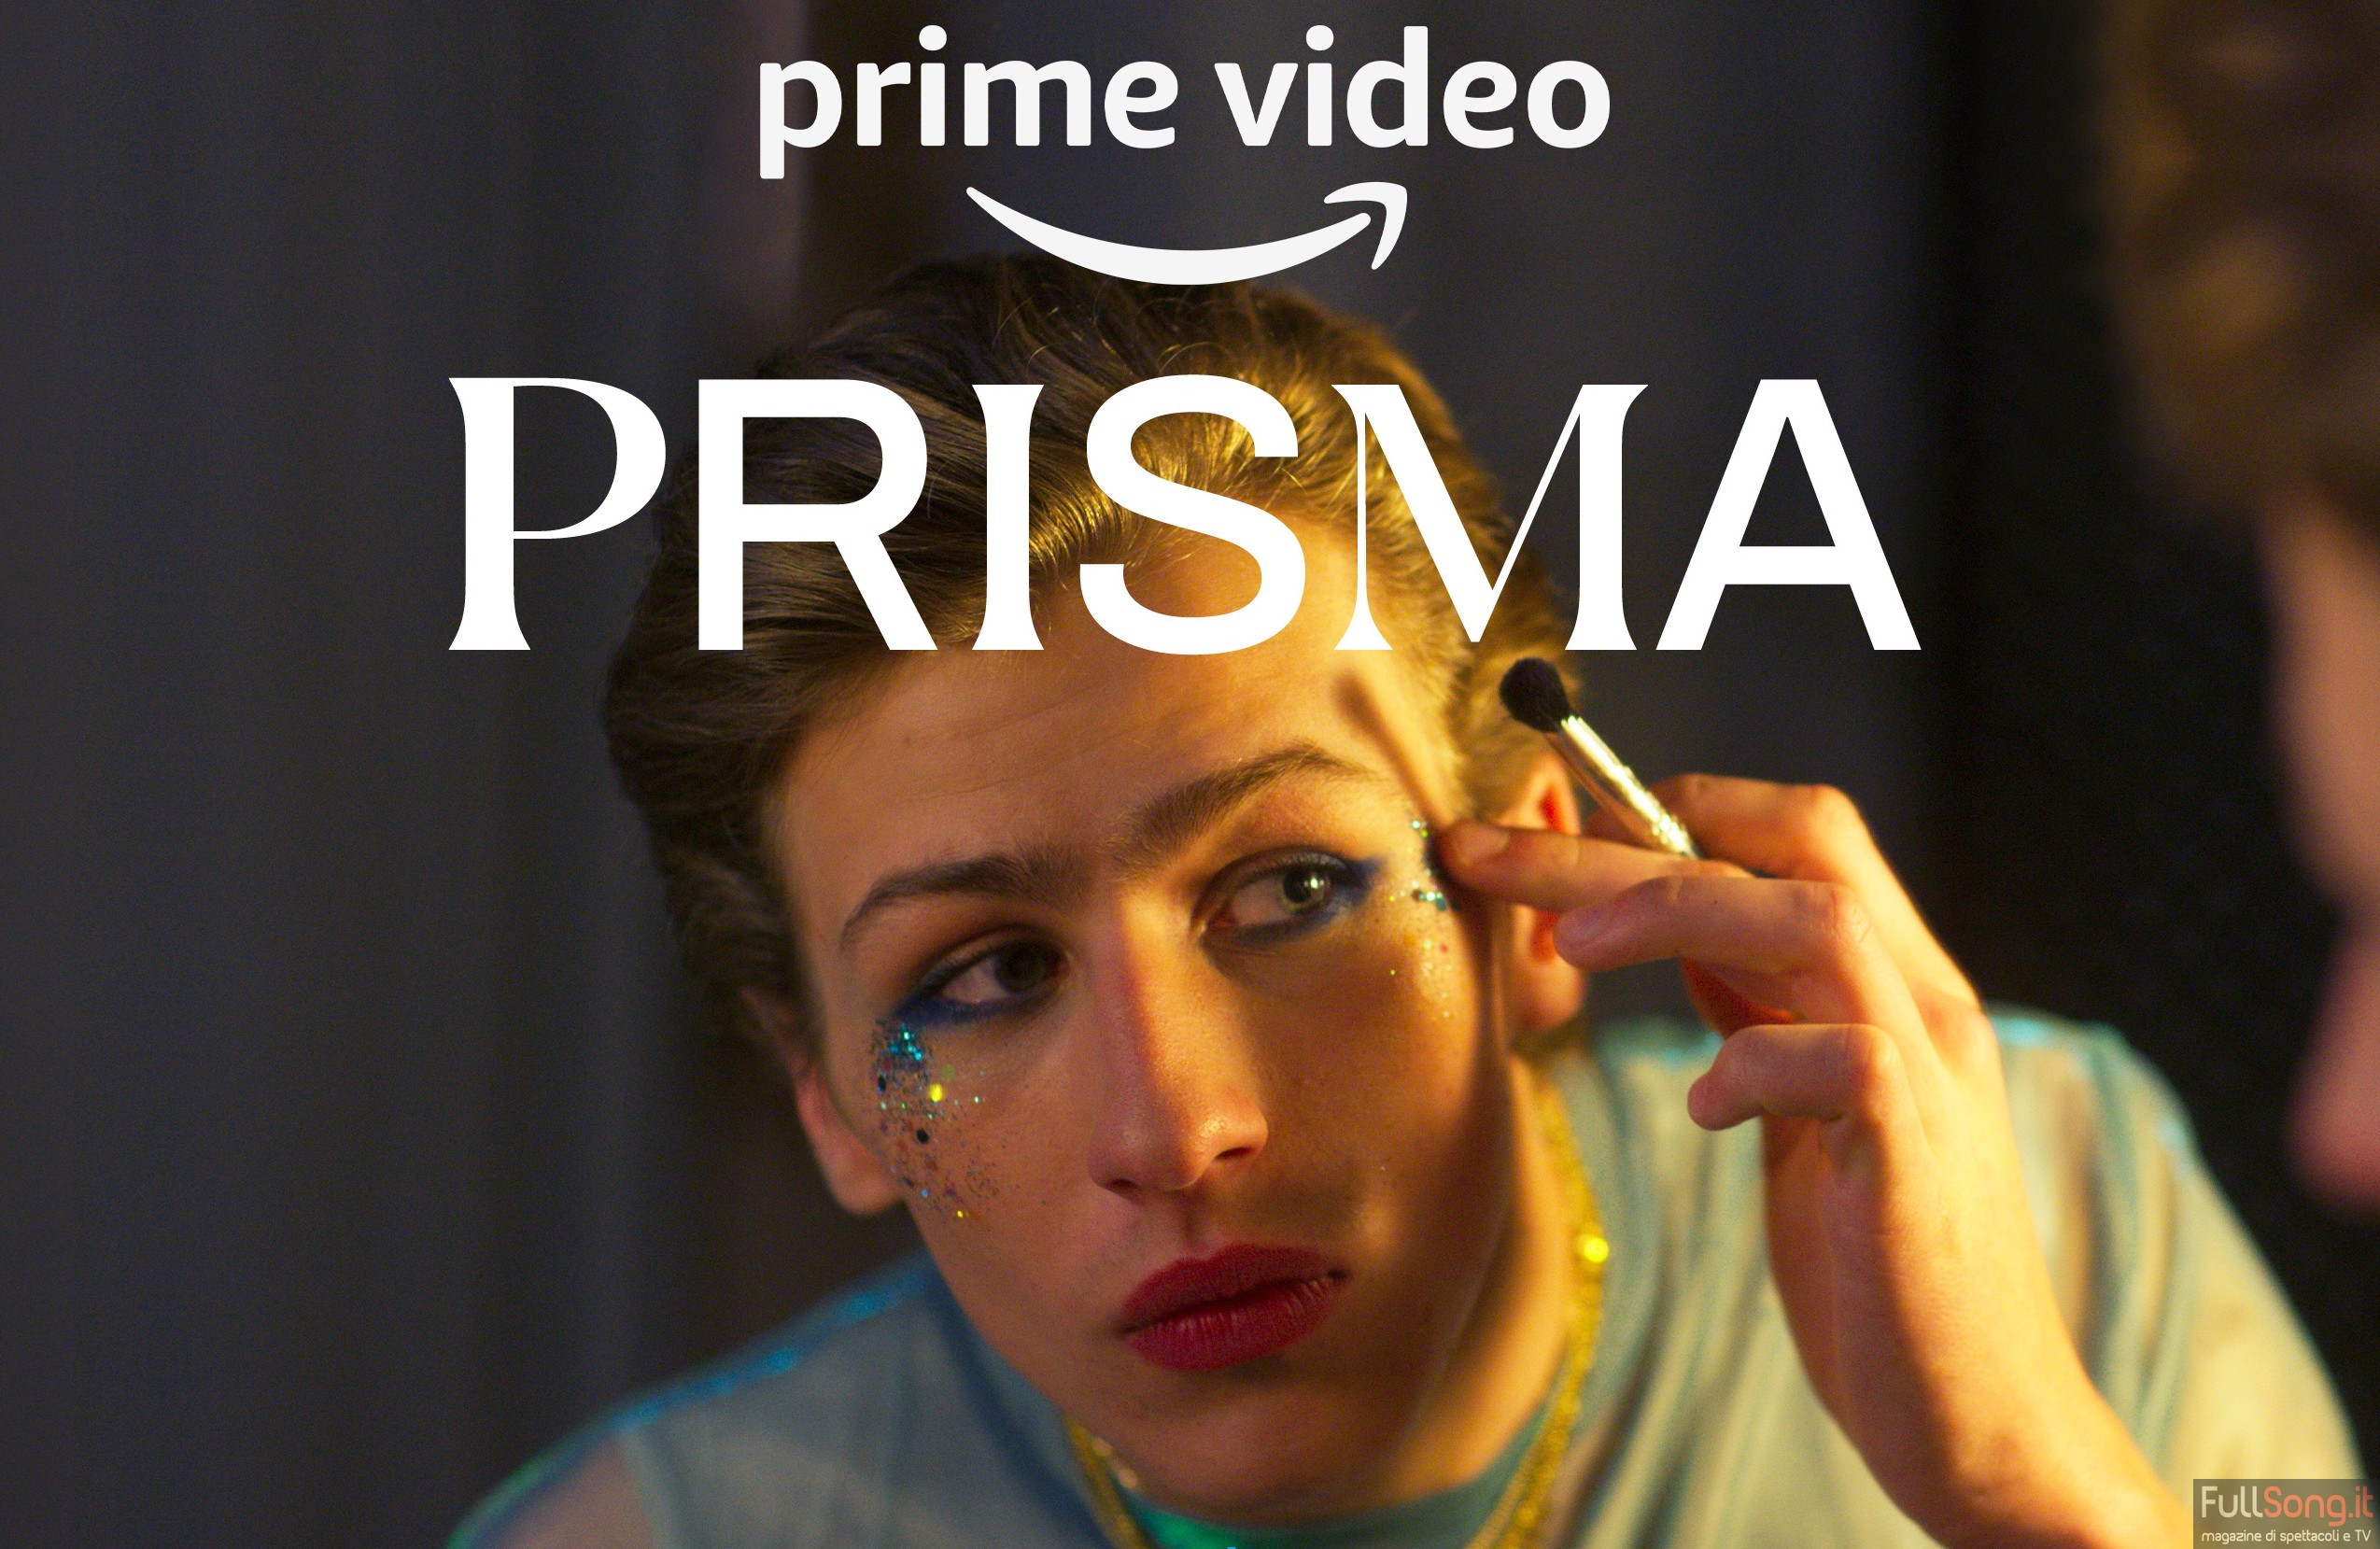 Amazon Prime, Prisma